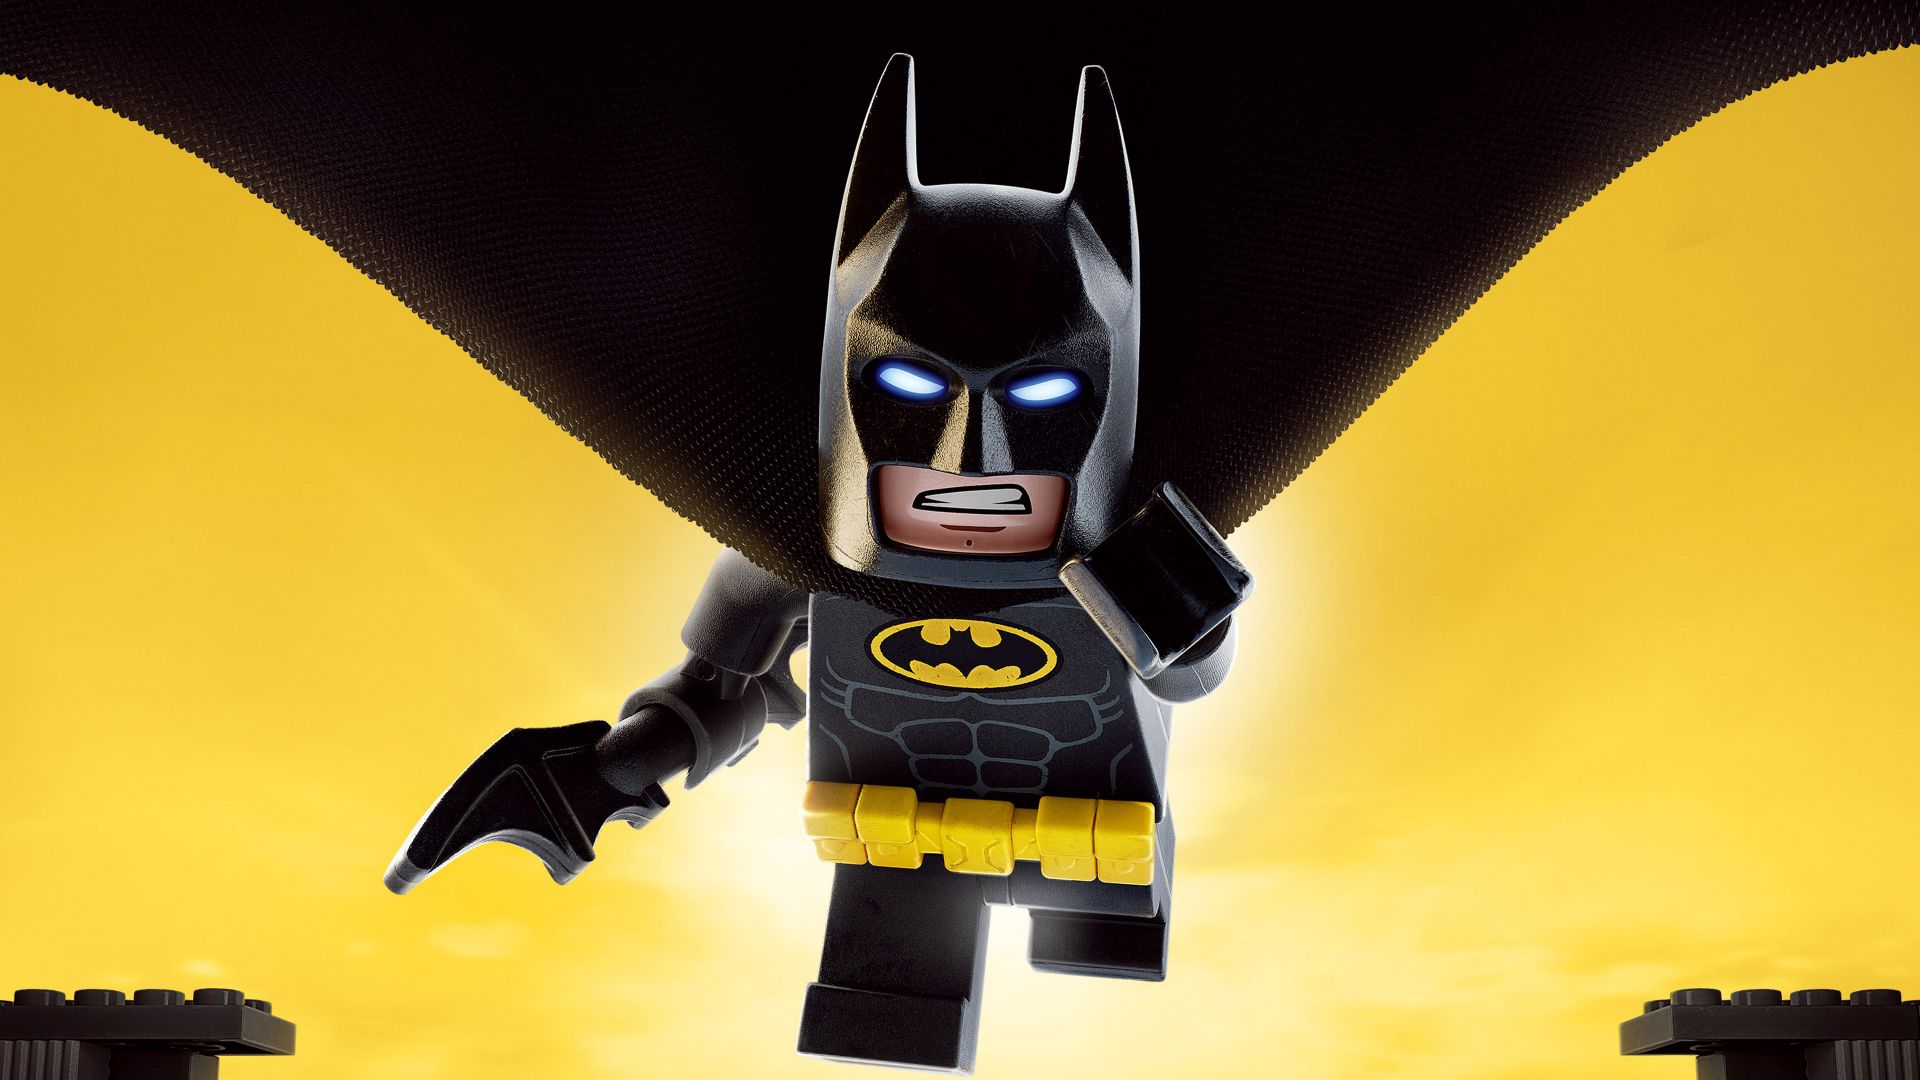 Лего Фильм: Бэтмен, бэтмен, лего, лучшие фильмы, The LEGO Batman Movie, batman, lego, best movies (horizontal)